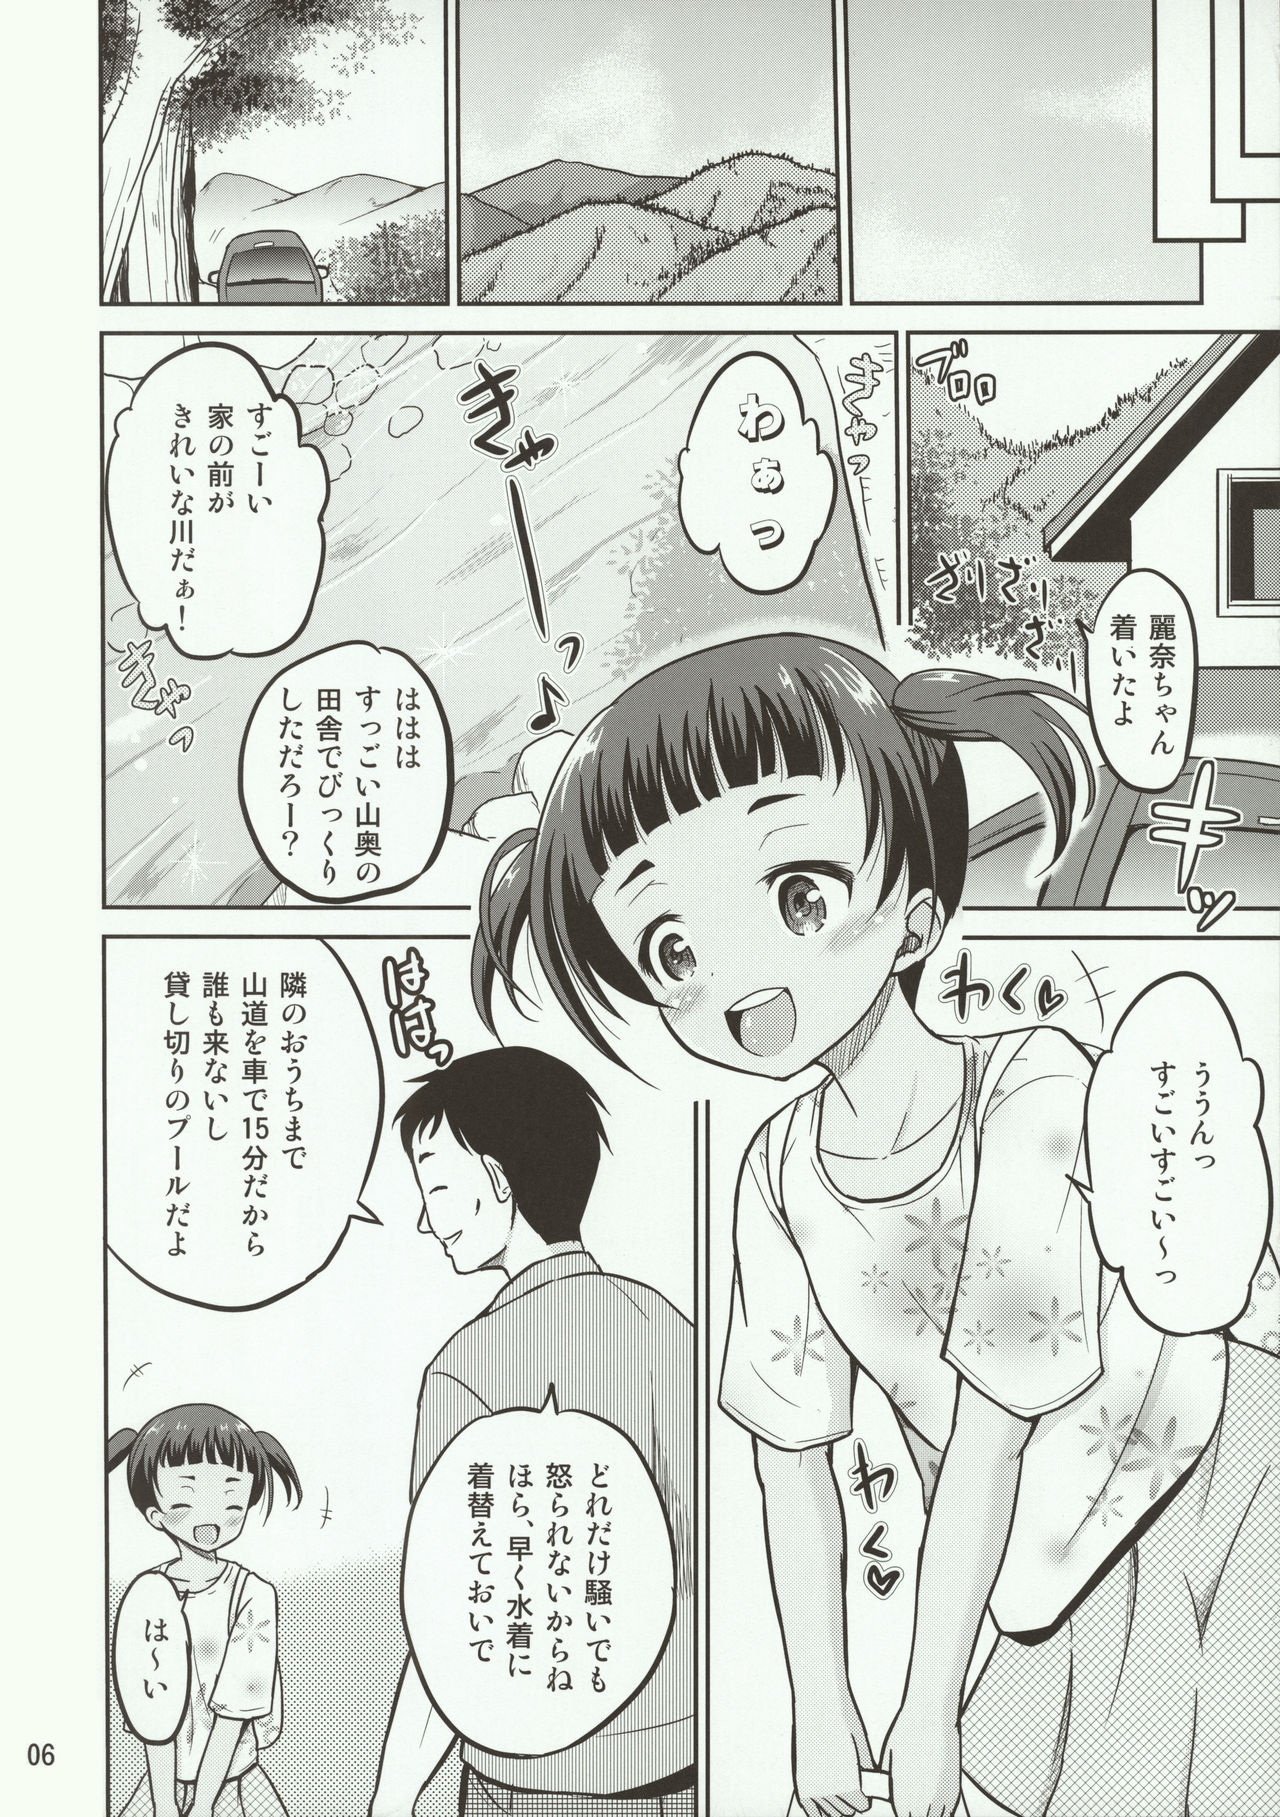 (C90) [Cartagra (Kugami Angning)] Reina page 6 full